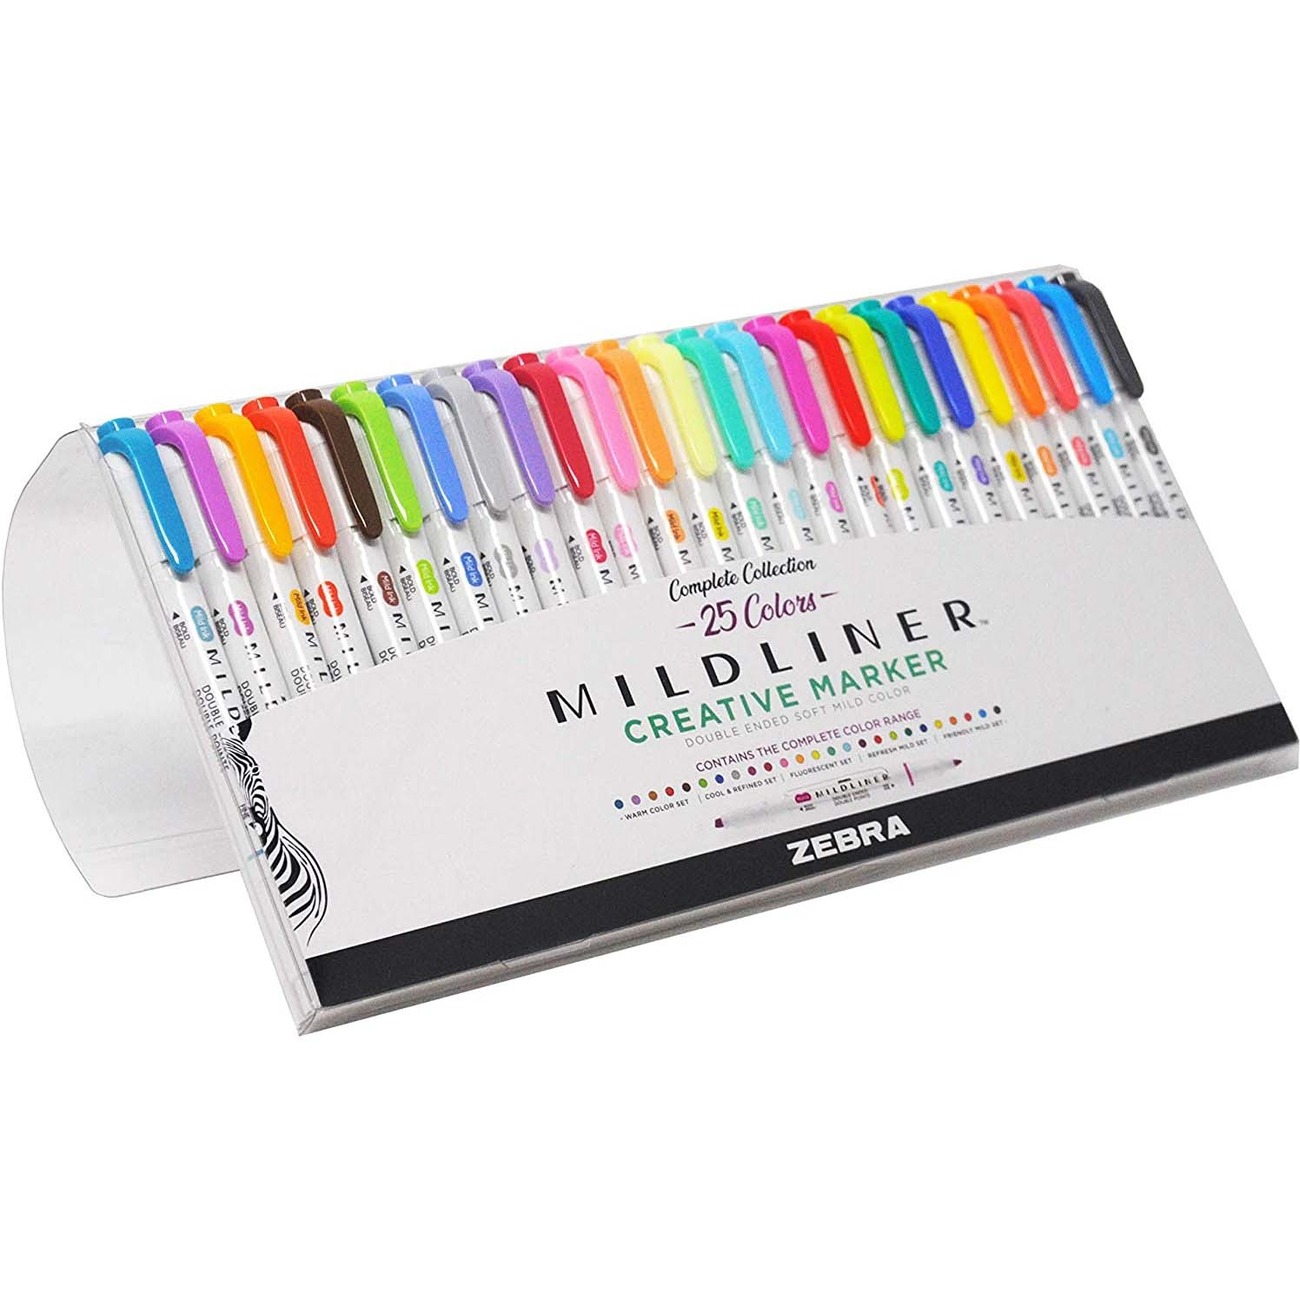 Individual Zebra Mildliner Brush Pens Double-sided Highlighter 